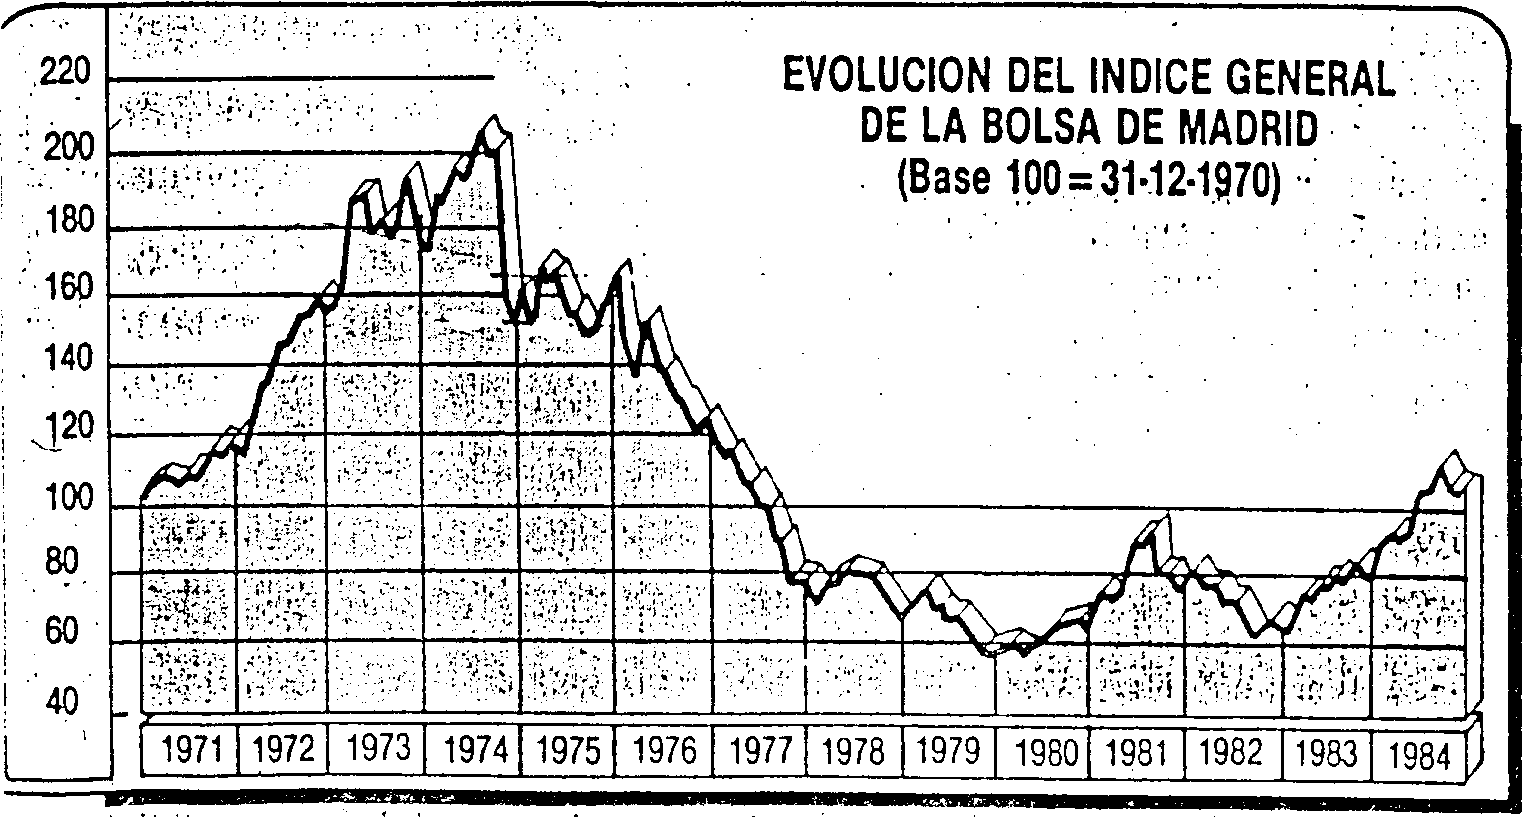 Quadre 3. Evolució de l'índex general de la Borsa de Madrid des de 1971 fins a 1984.